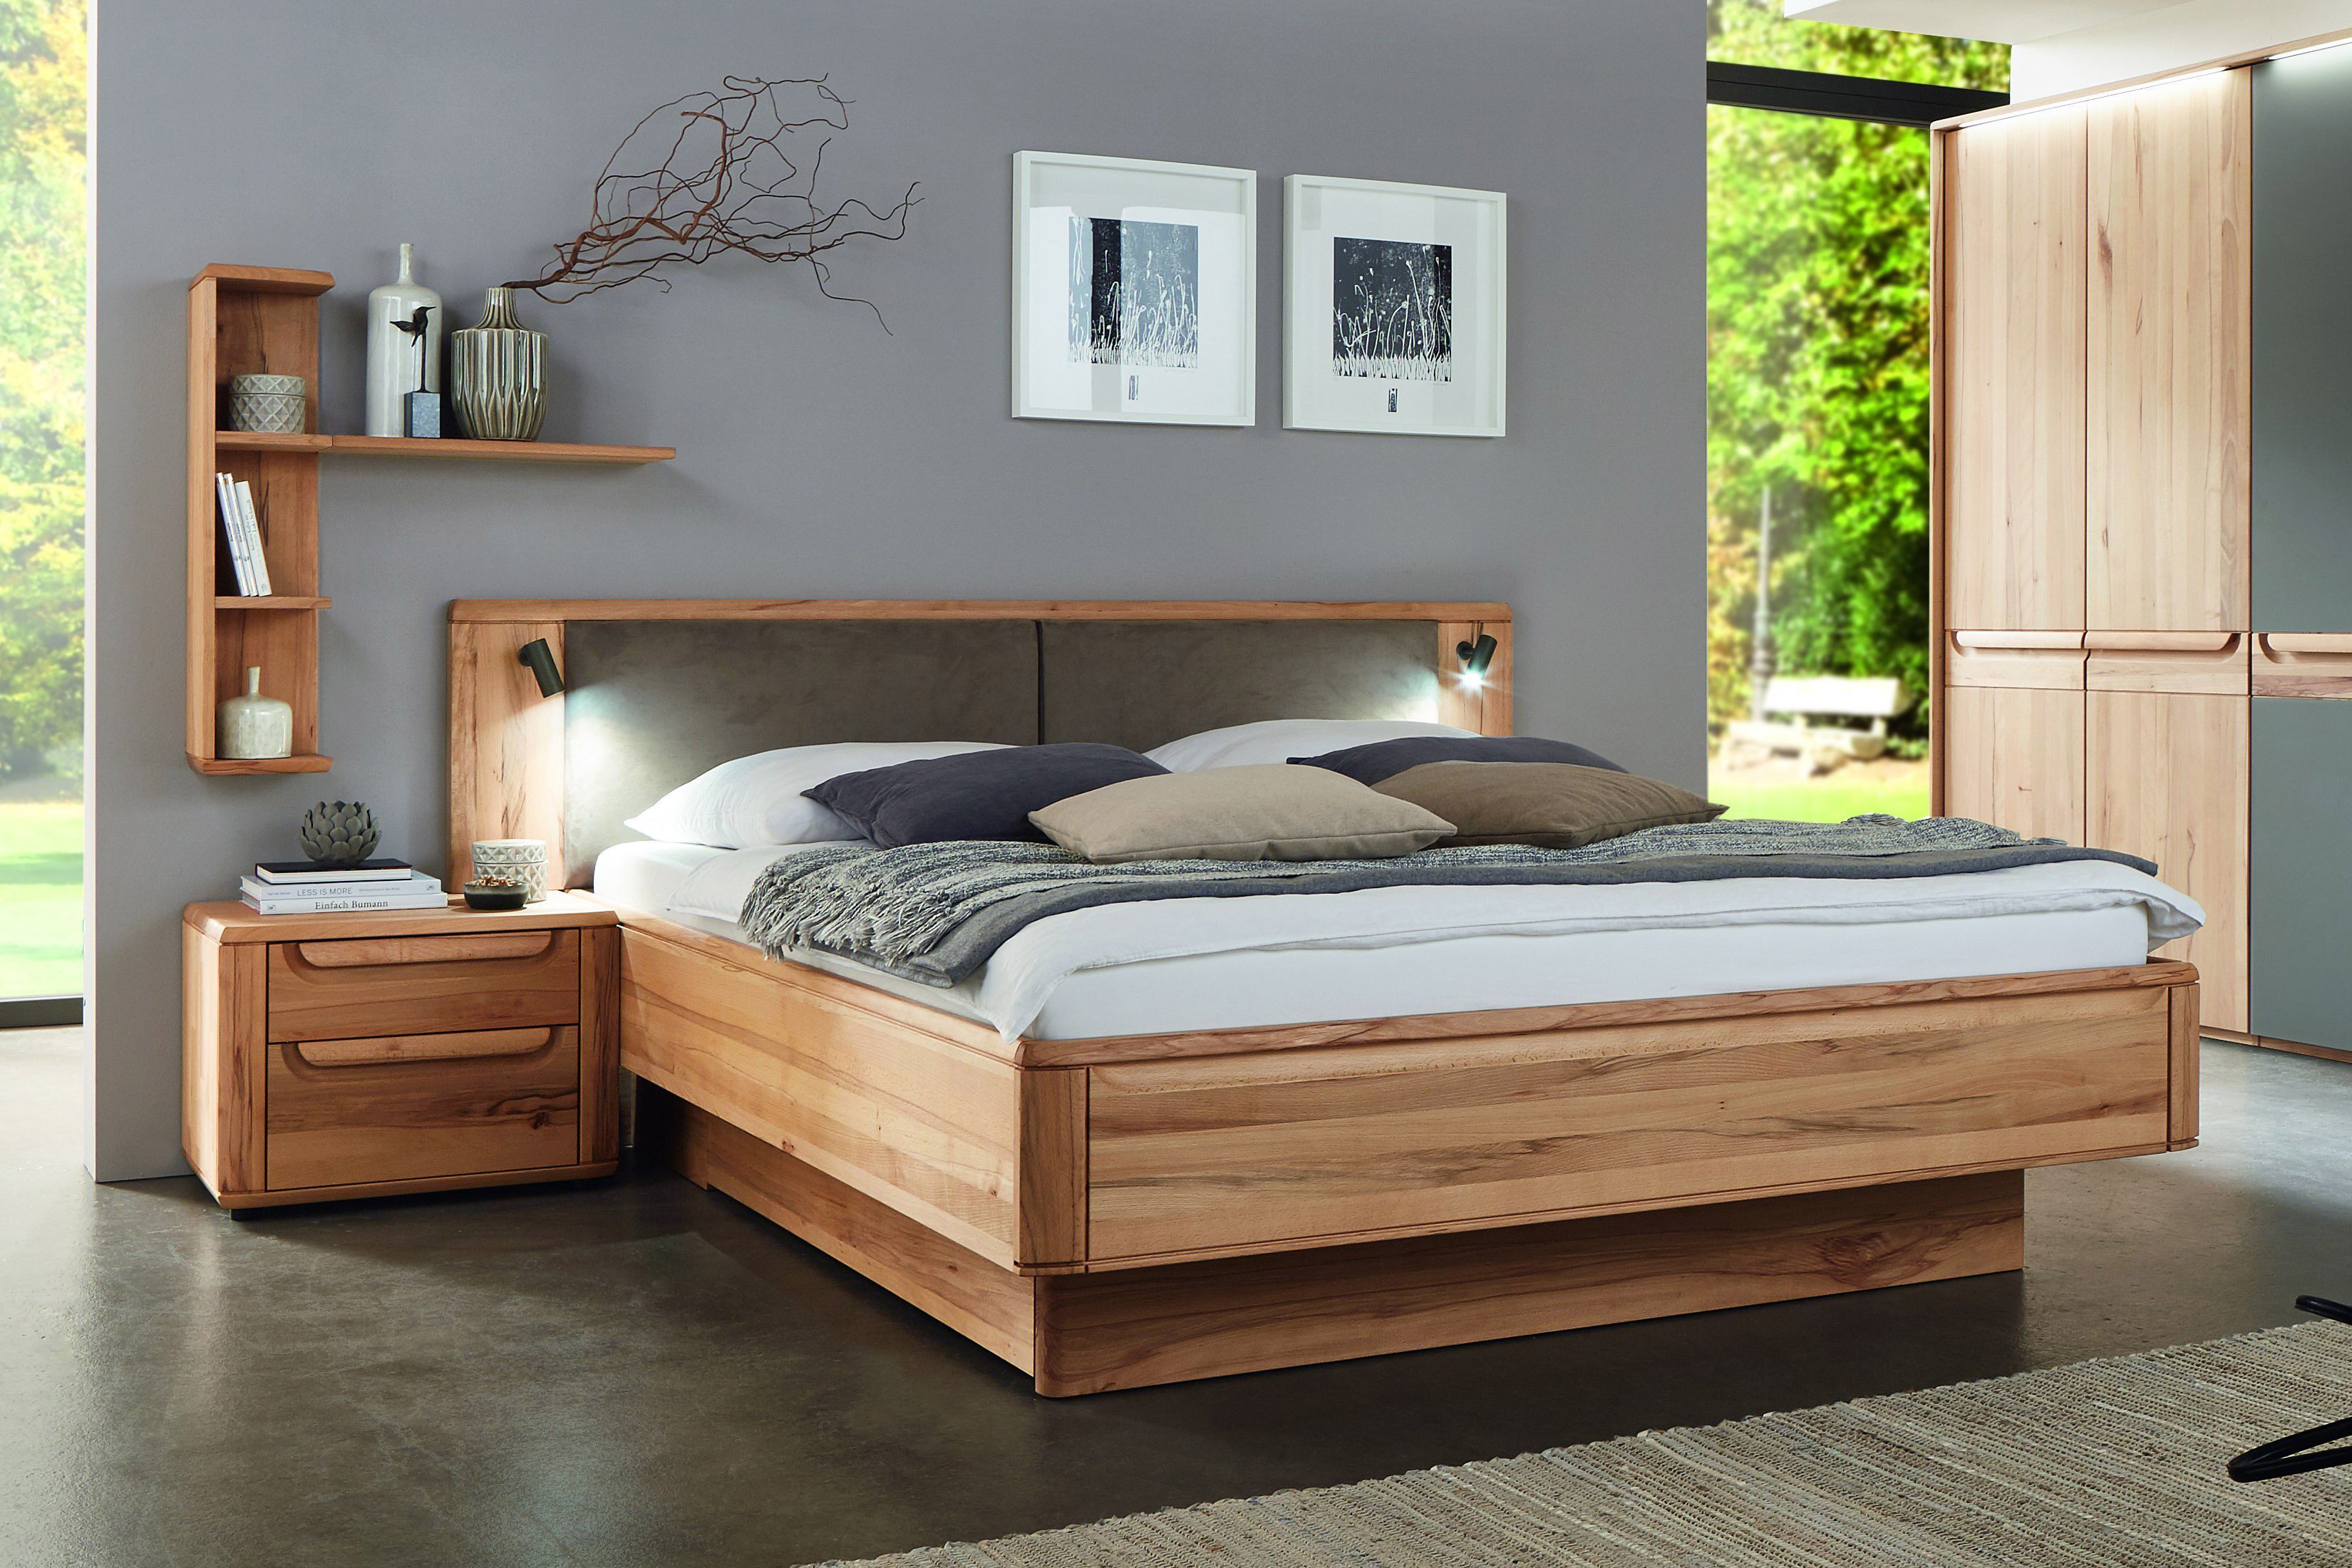 Деревянные двуспальные кровати из массива